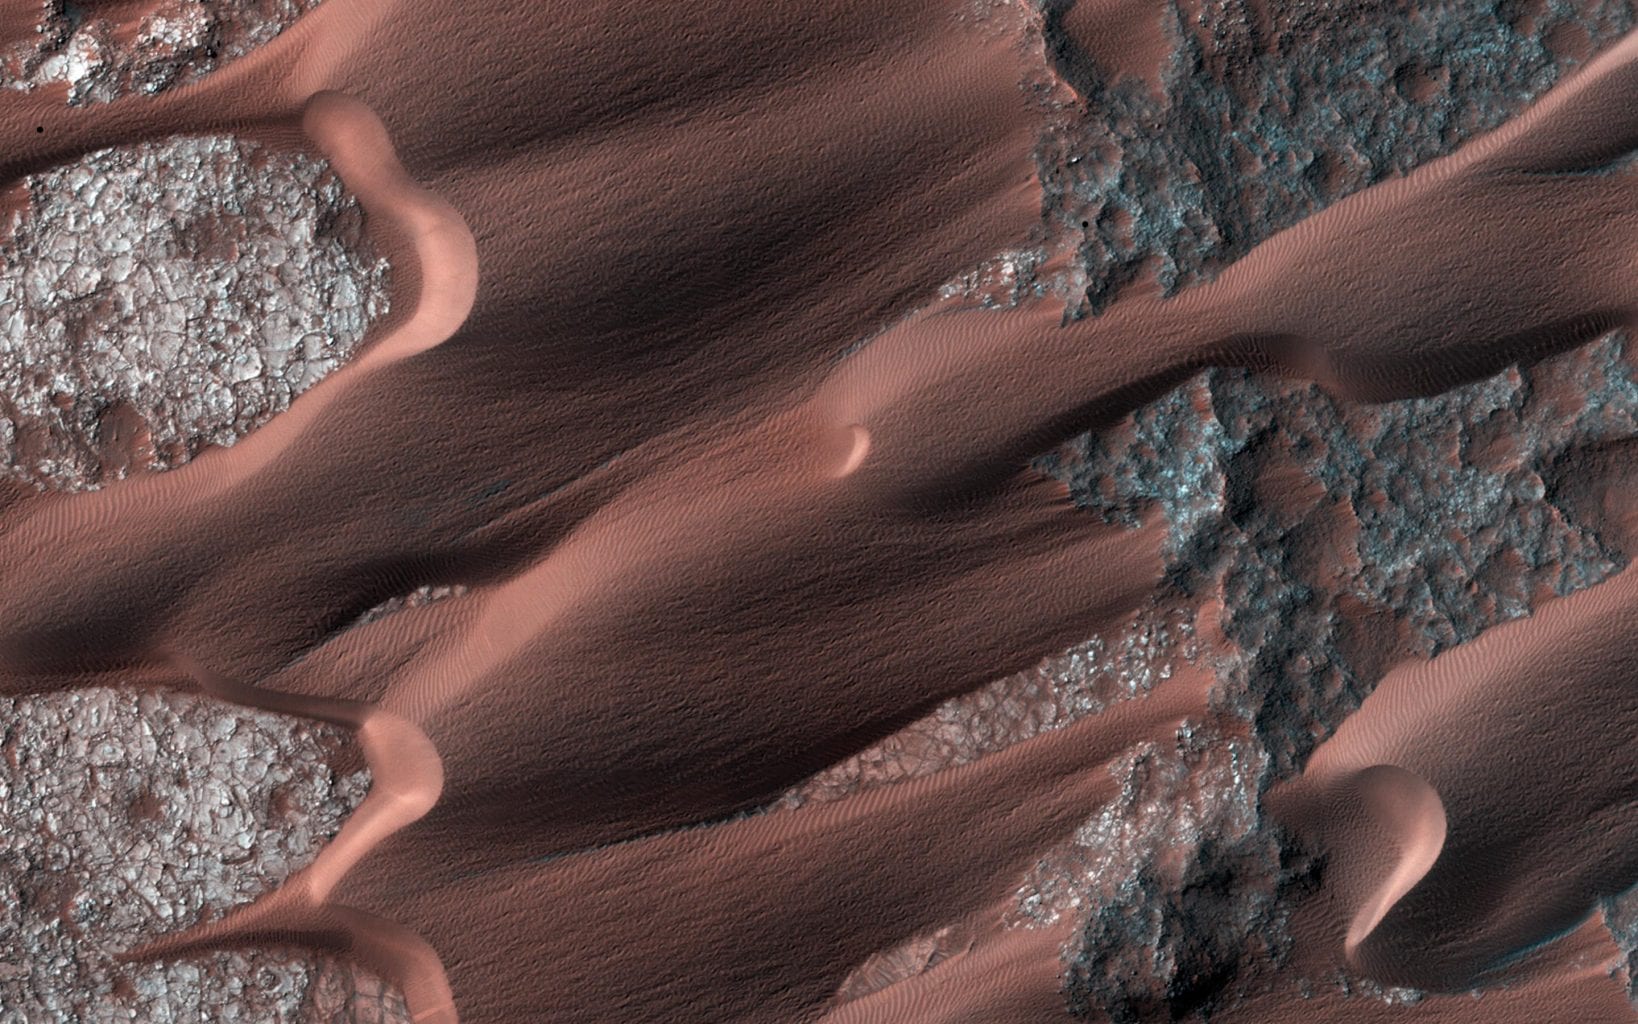 Поле дюн Нили Патера, сфотографированное здесь марсианским разведывательным орбитальным аппаратом, расположено на древнем ложе застывшей лавы. Предоставлено: NASA / JPL-Caltech / Univ. Аризоны